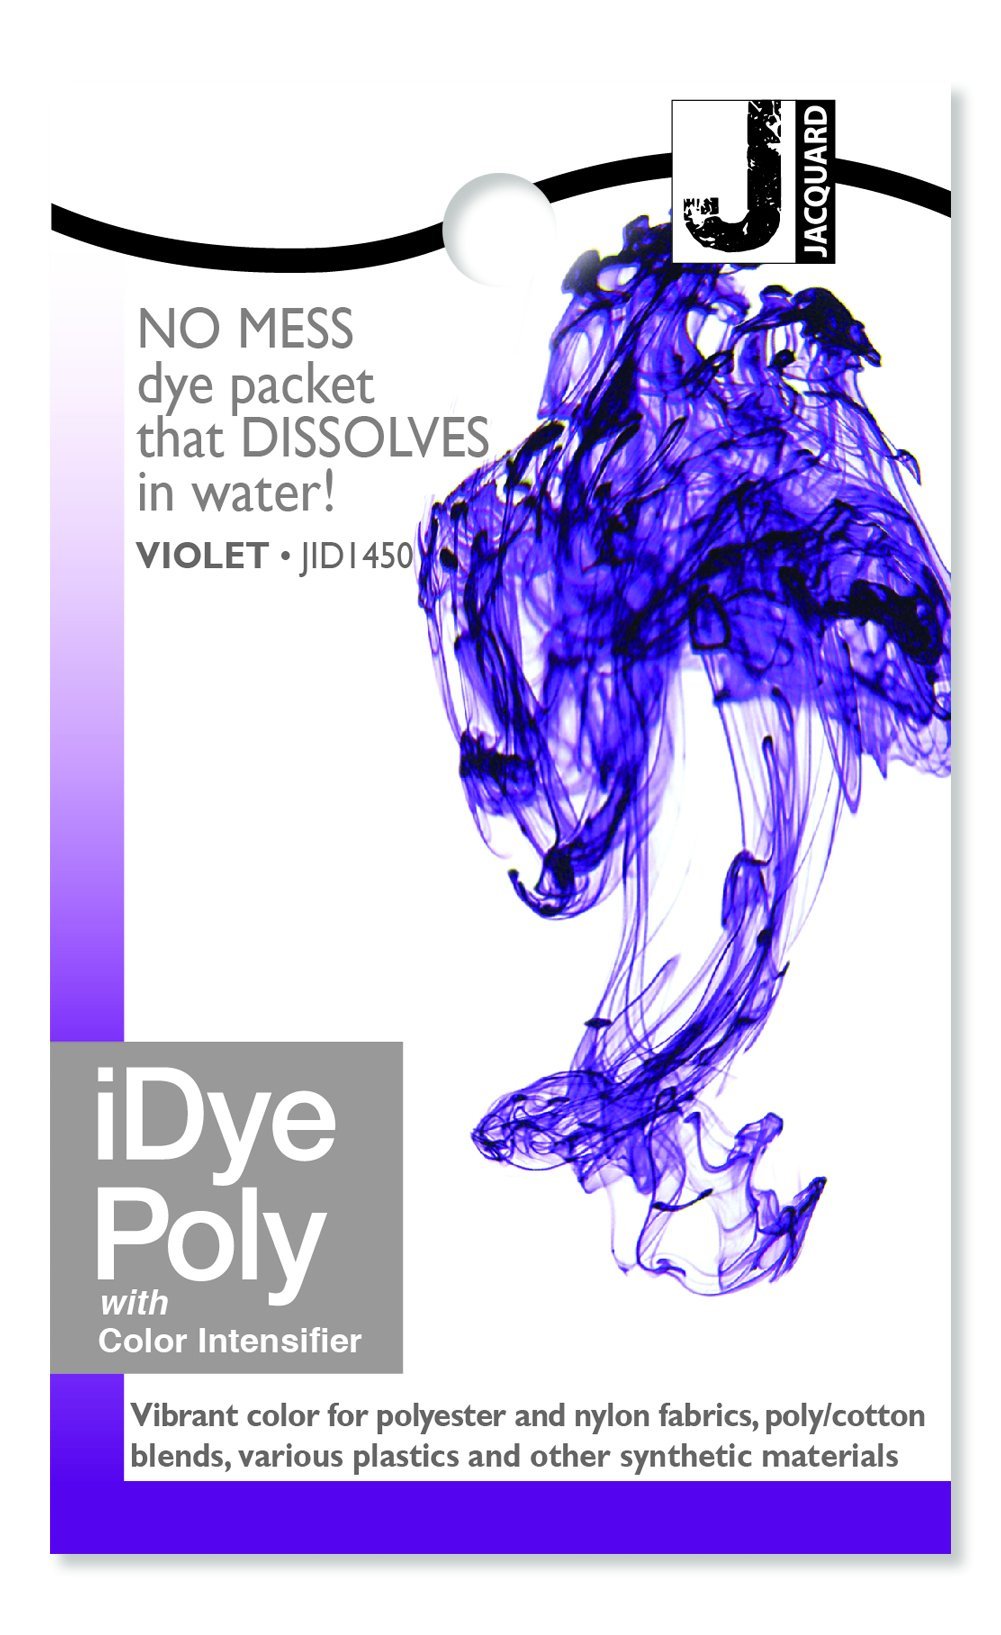 Teinture Polyester iDye Poly - Gris anthracite - 14 g - Teinture